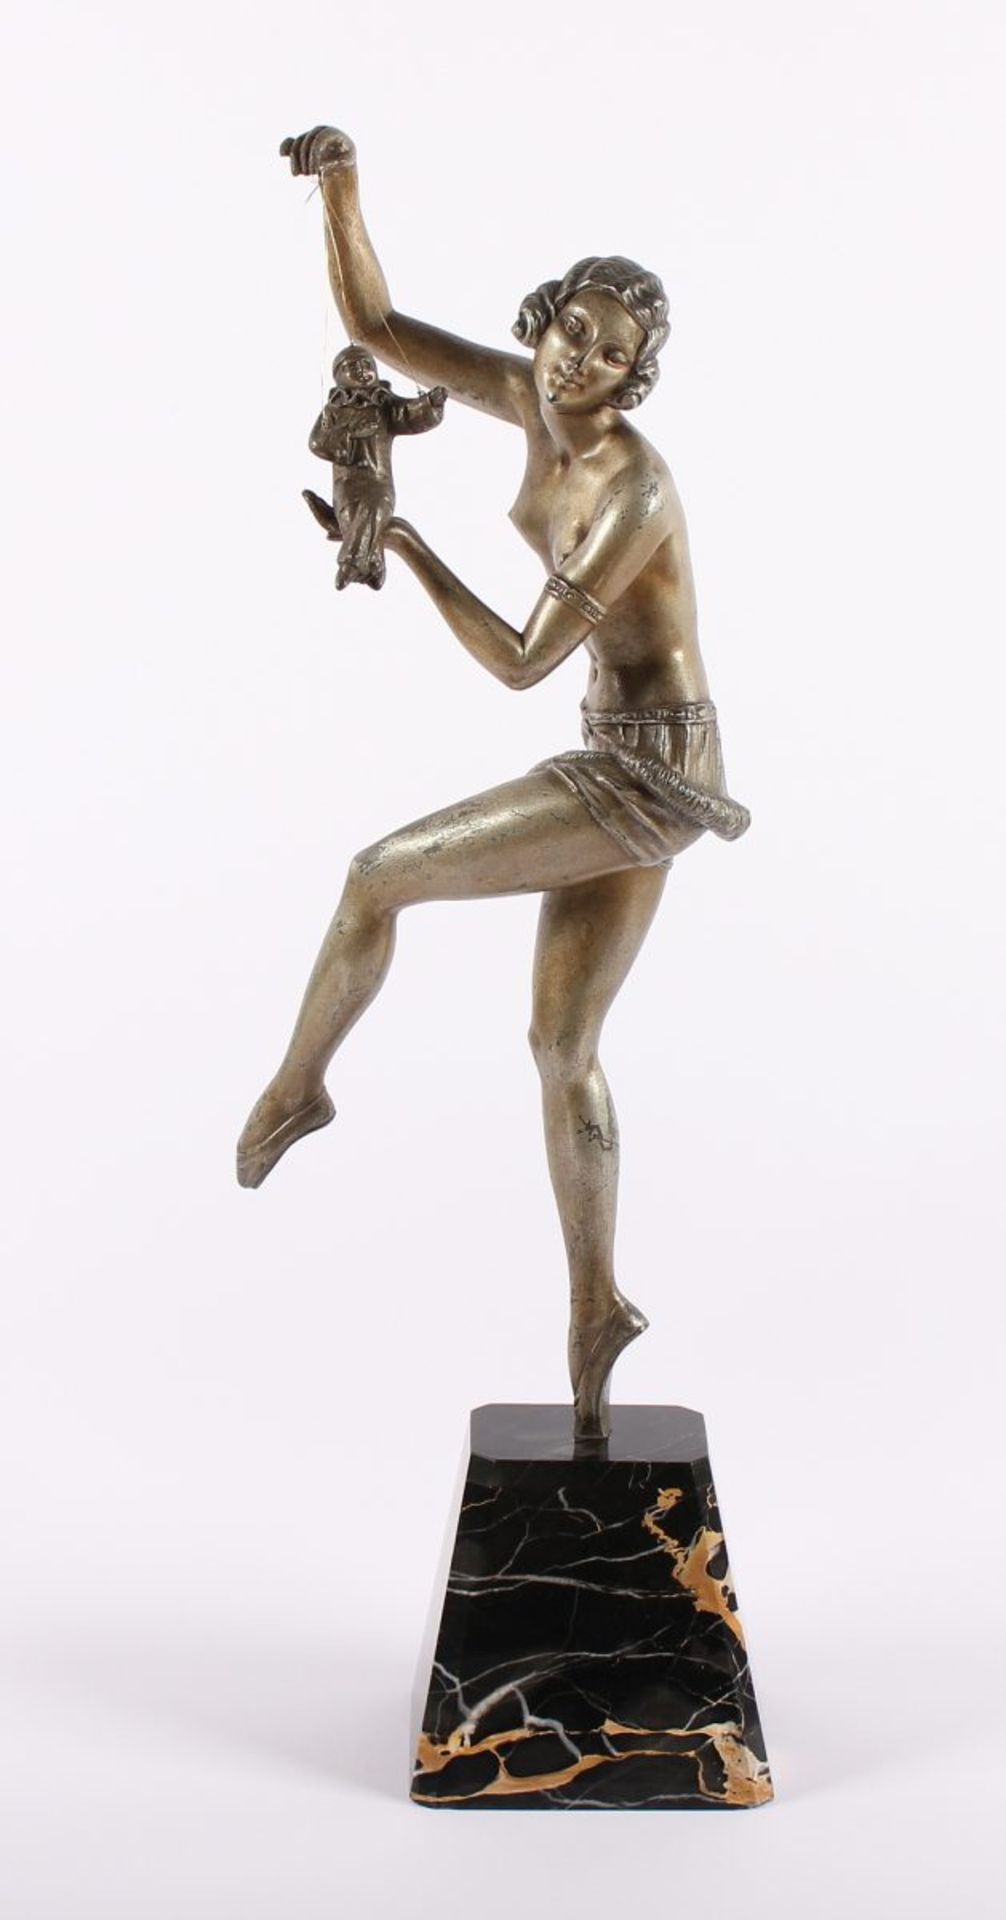 BOURAINE, Marcel André, zugeschrieben, "Marionettenspielerin", Régule, bronziert, H 44,5,